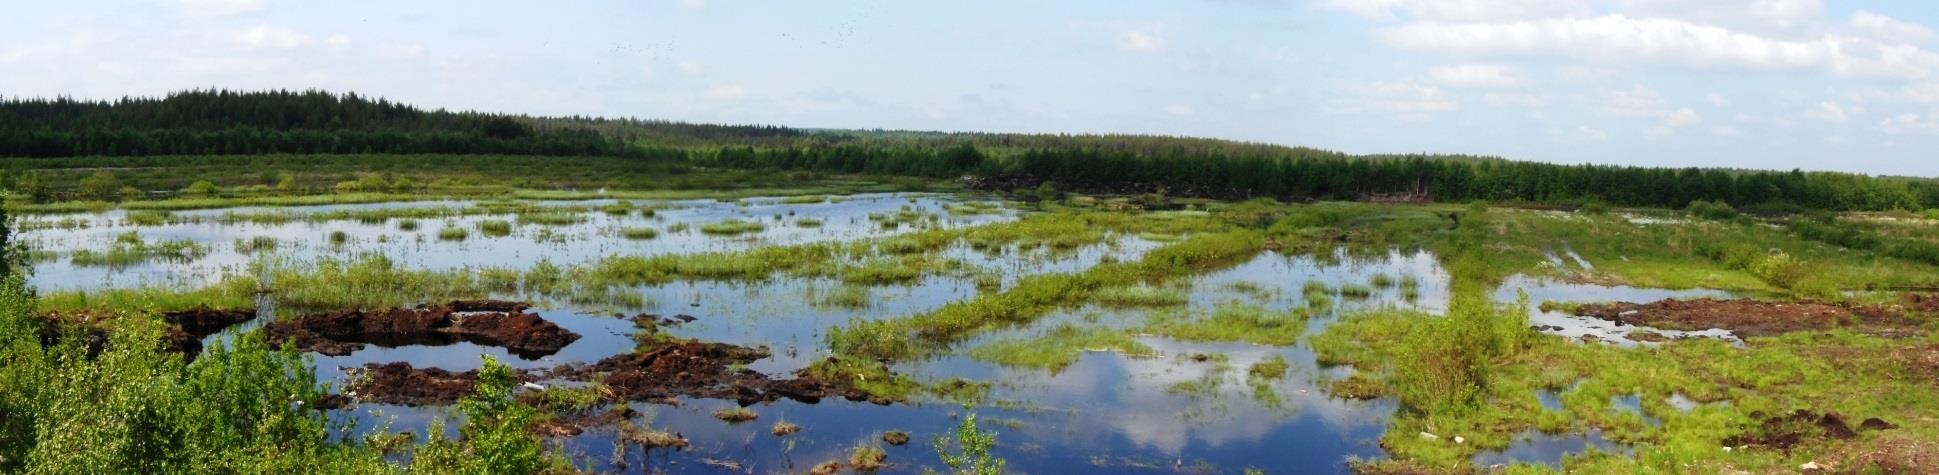 Miljöavtal: Avtal om skötsel av våtmark Avtal om skötsel av våtmark kan sökas för en våtmark, ett översvämningsområde eller en areal som upptas av en fåra som återställts i naturenligt